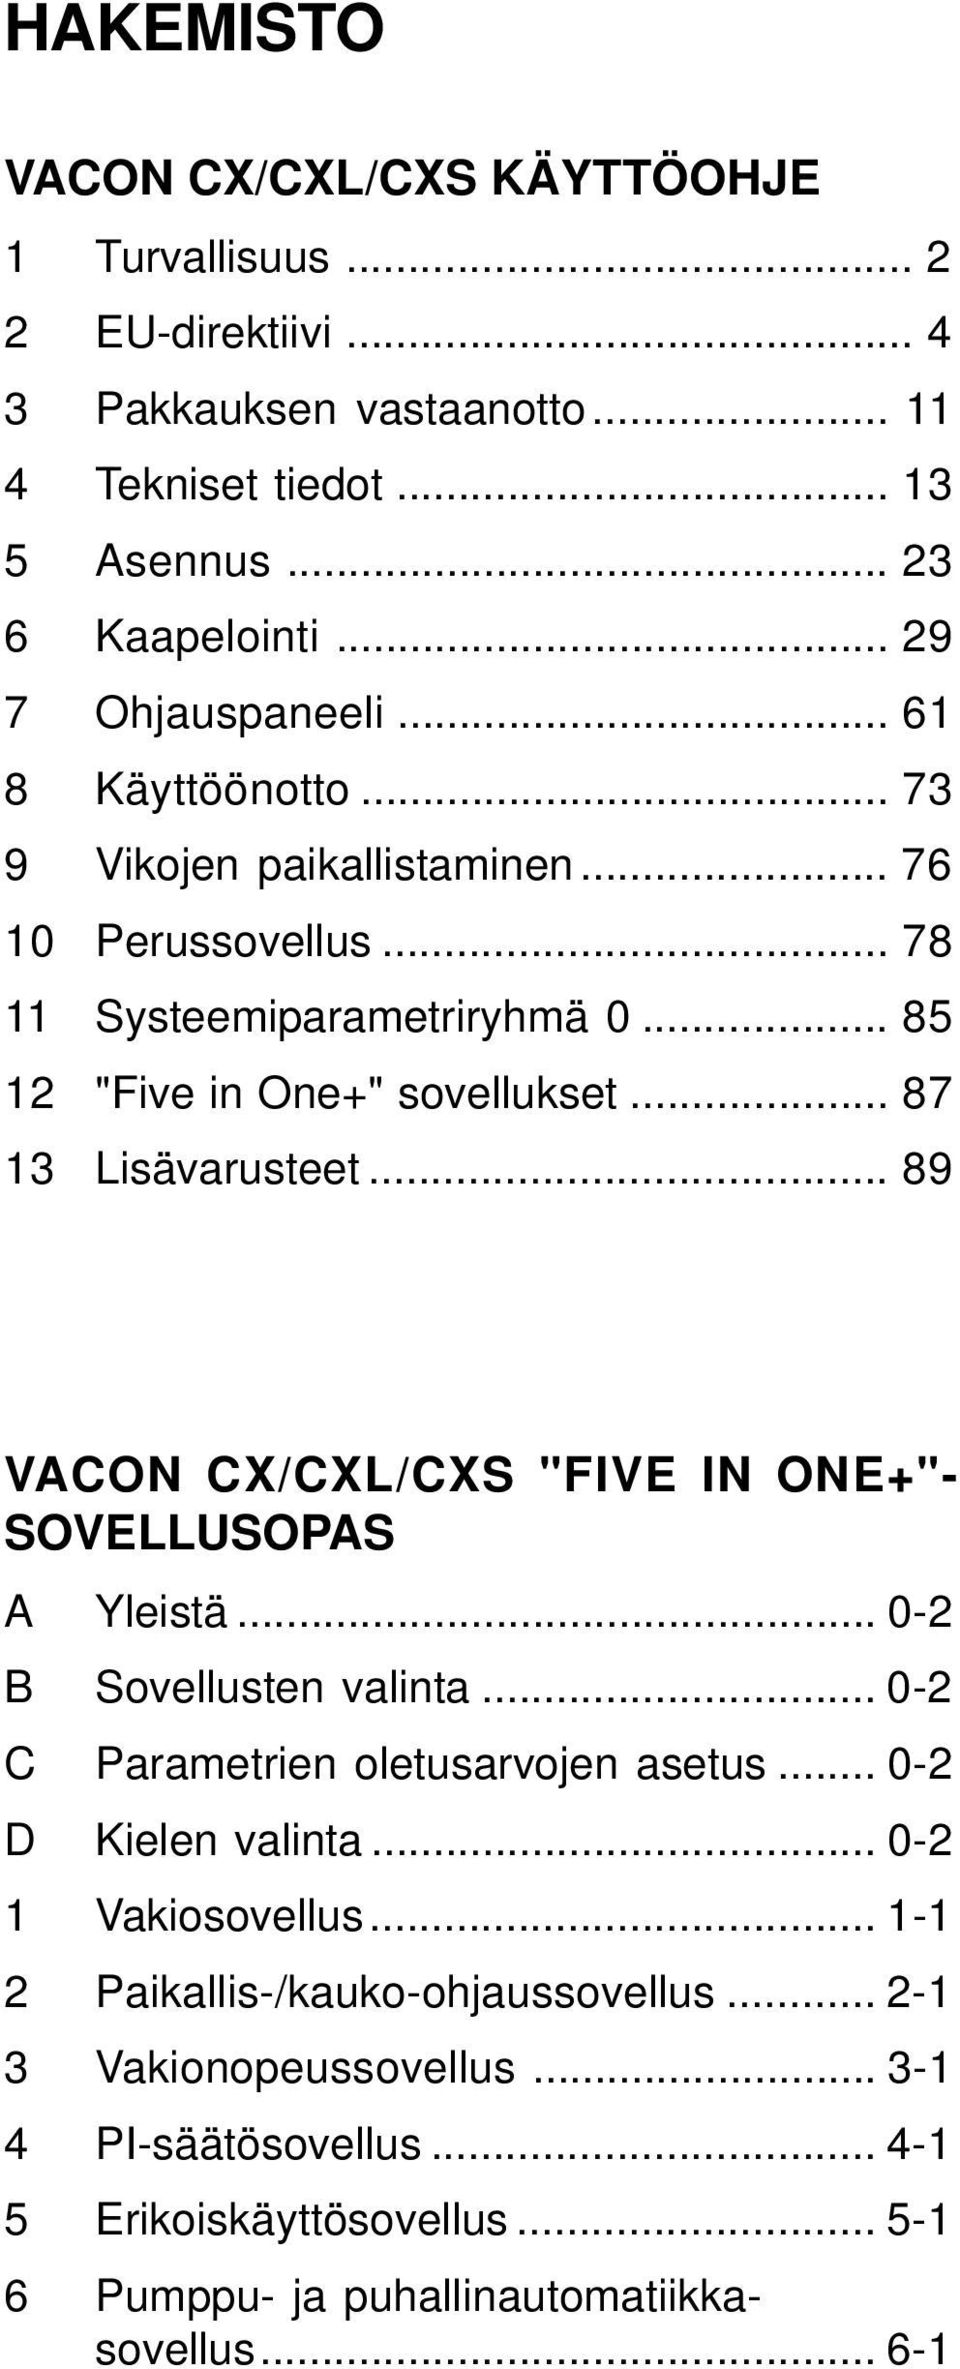 .. 87 13 Lisävarusteet... 89 VACON CX/CXL/CXS "FIVE IN ONE+"- SOVELLUSOPAS A Yleistä... 0-2 B Sovellusten valinta... 0-2 C Parametrien oletusarvojen asetus... 0-2 D Kielen valinta.